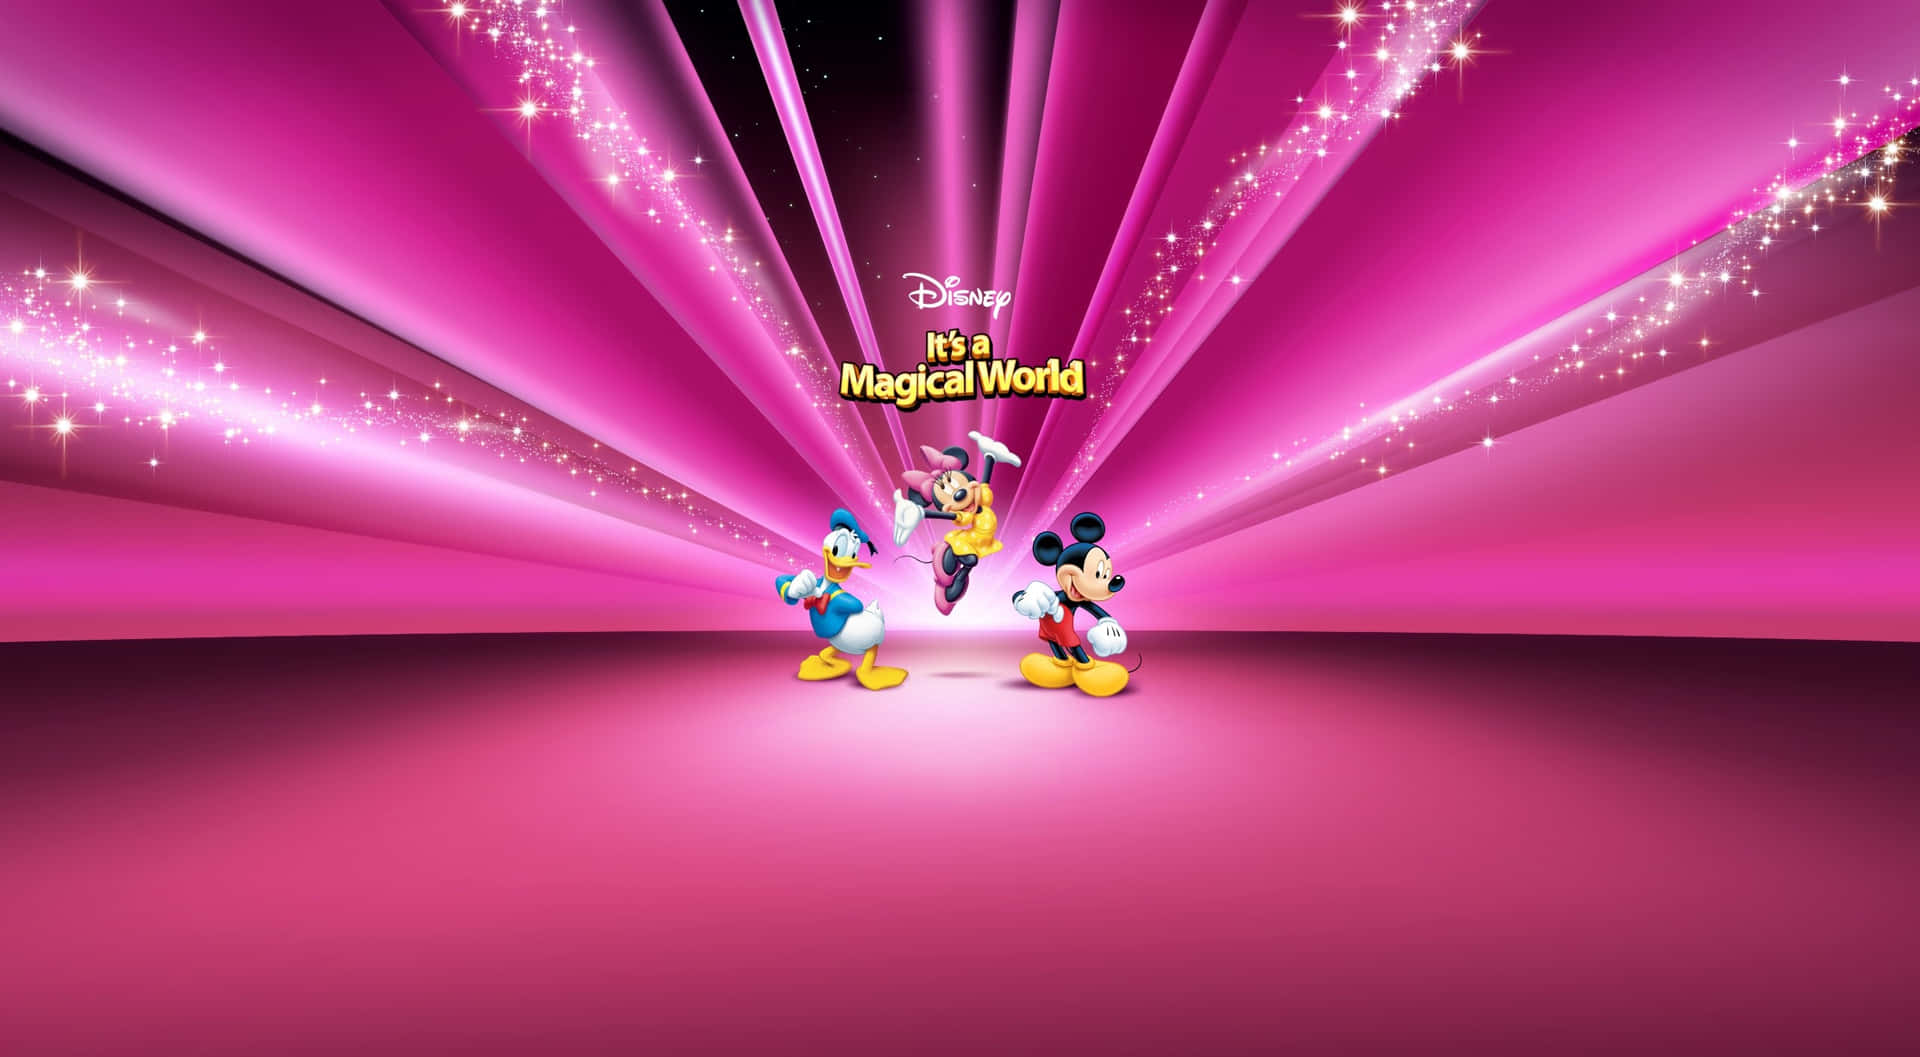 Mickey,minnie E Donald - Fundo Da Disney Em 1440p.